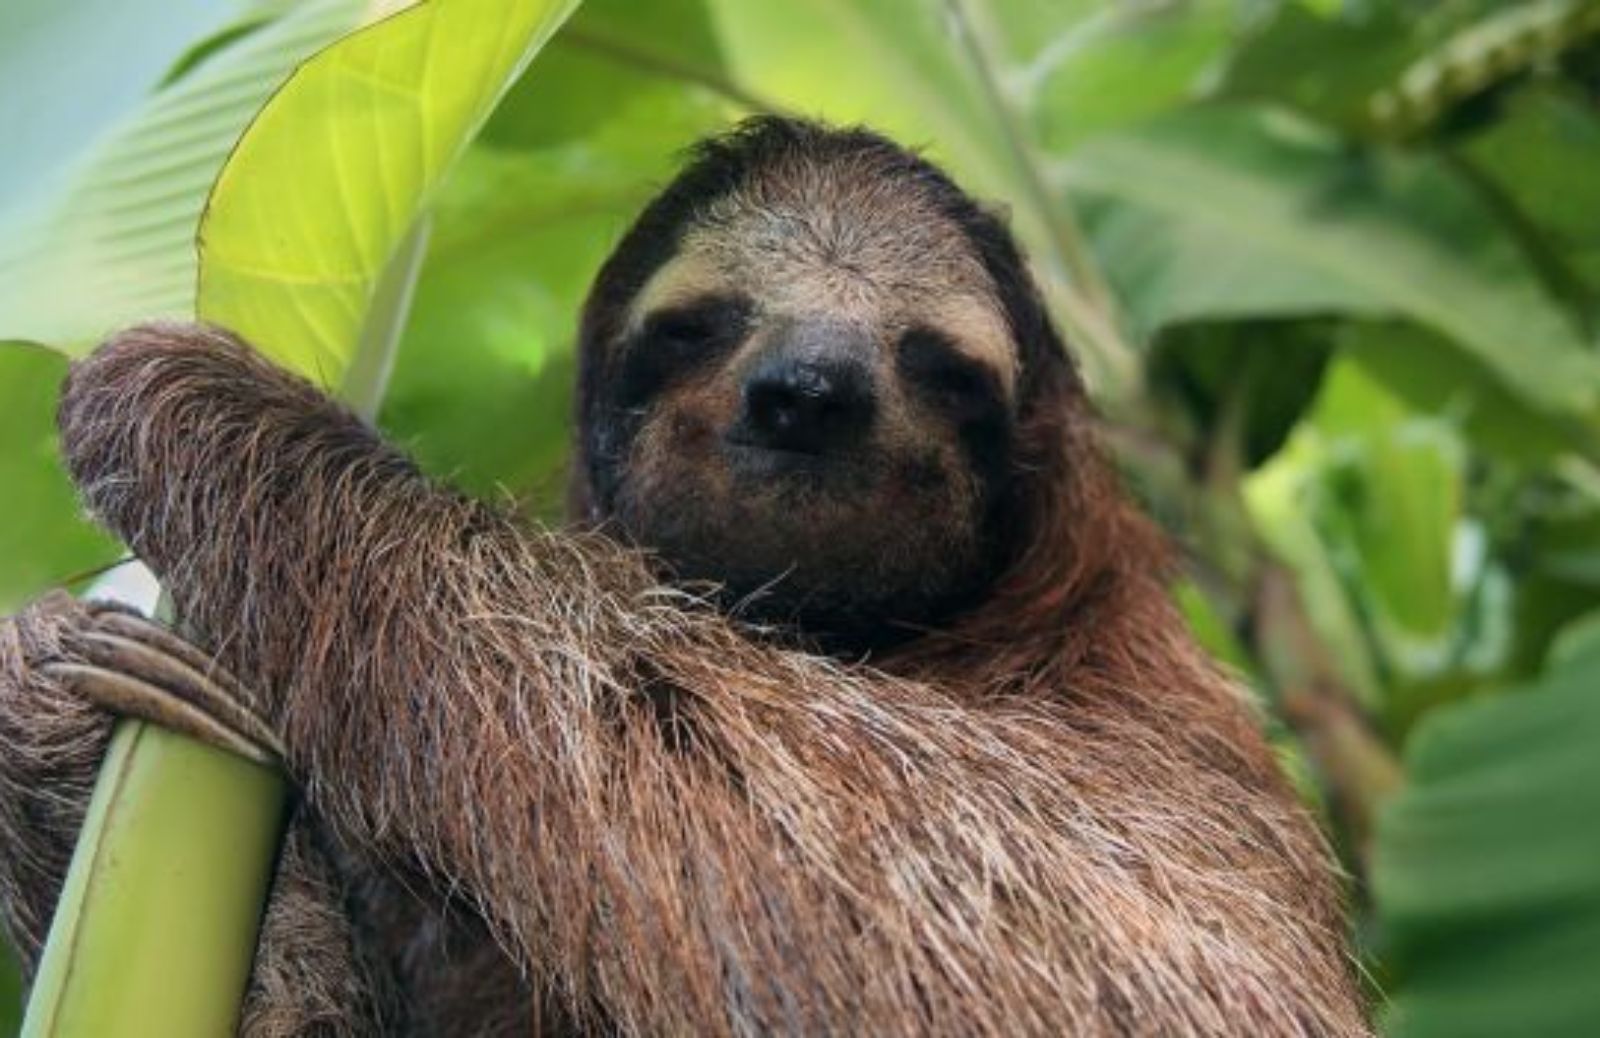 Come e perché il bradipo scende raramente dagli alberi